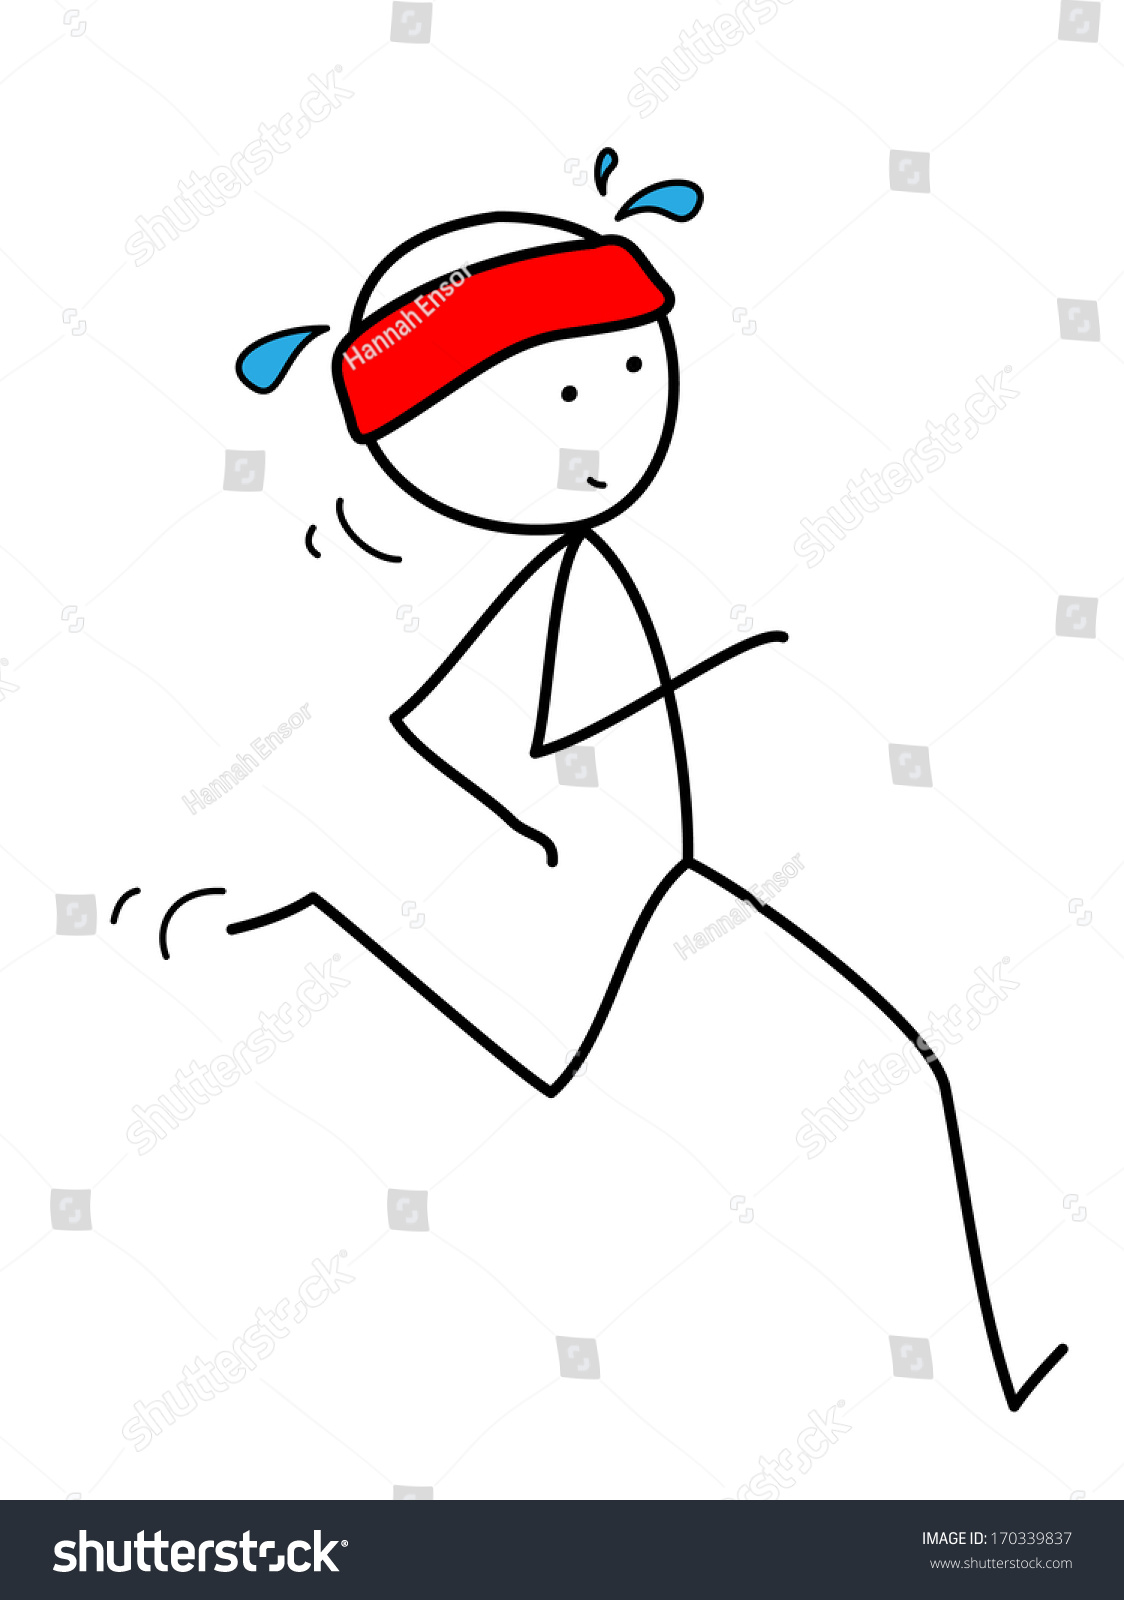 Running Stickman 2 Stock Illustration 170339837 - Shutterstock